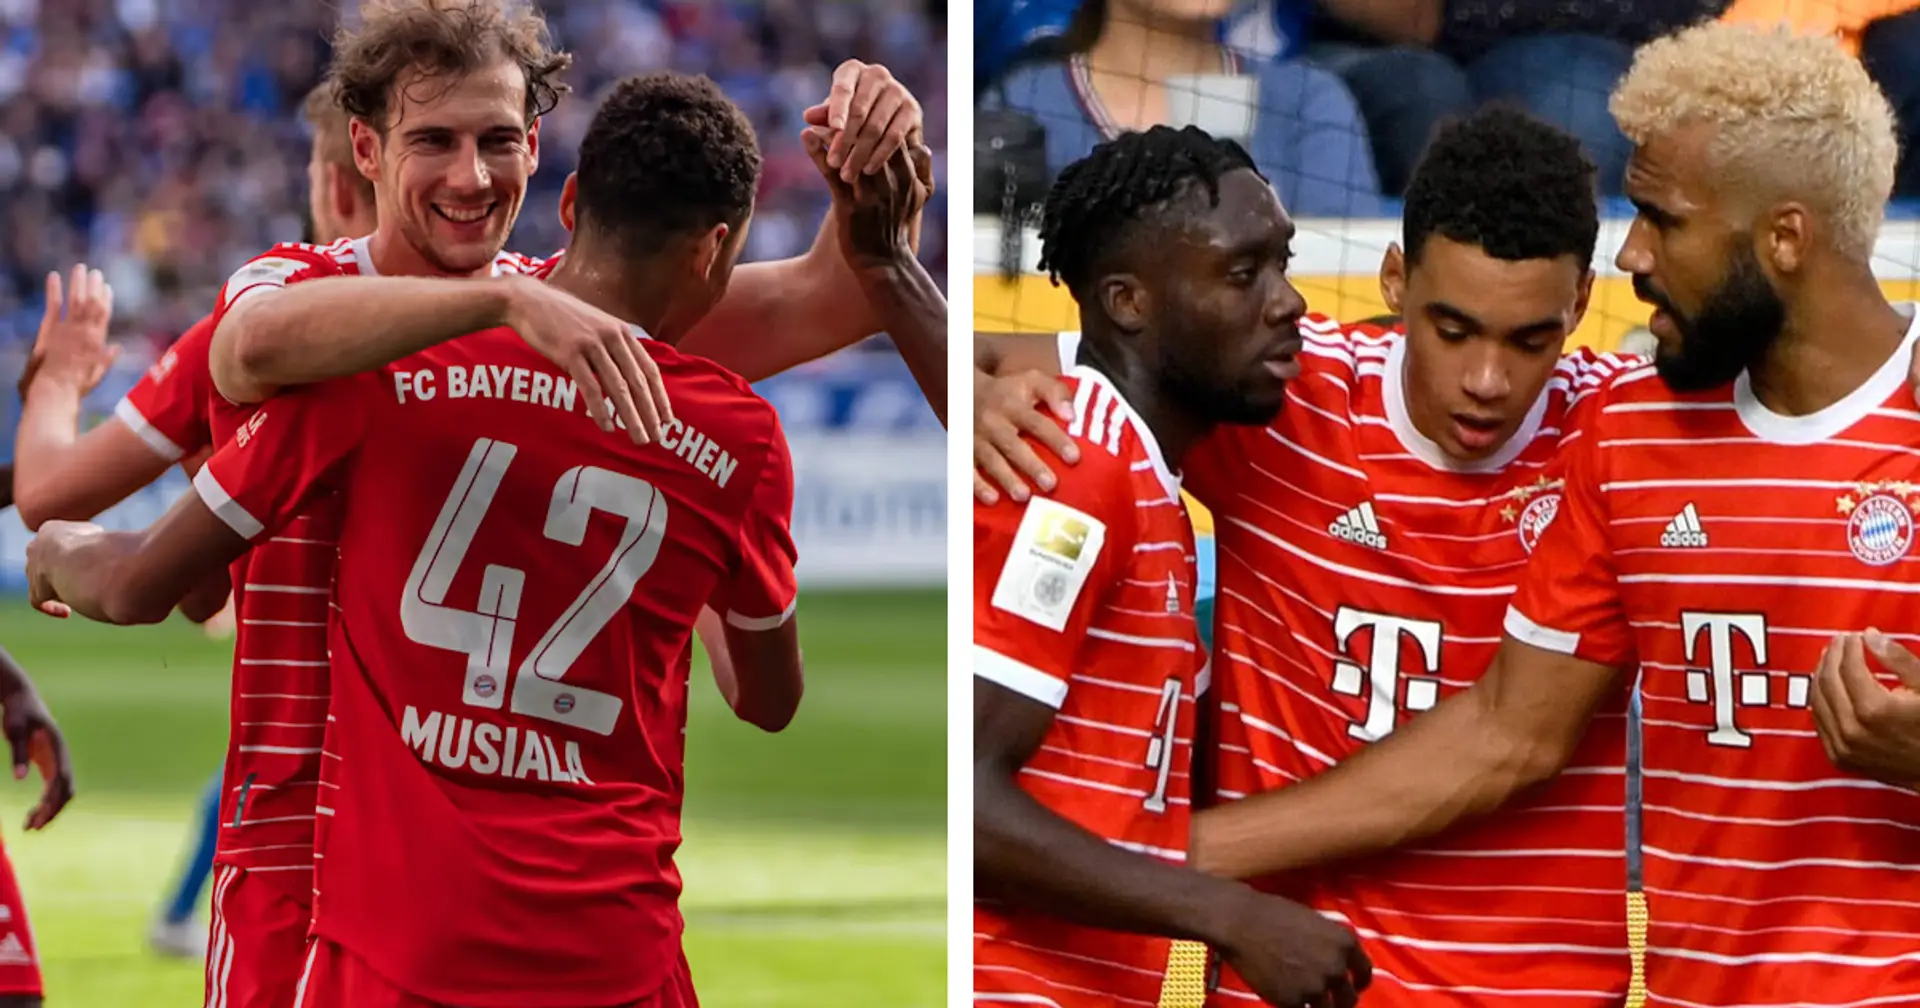 Perfektes vorzeitiges Ende von 2022: Bayerns 2:0-Sieg gegen Schalke 04 in 3 Kernpunkten zum Besprechen